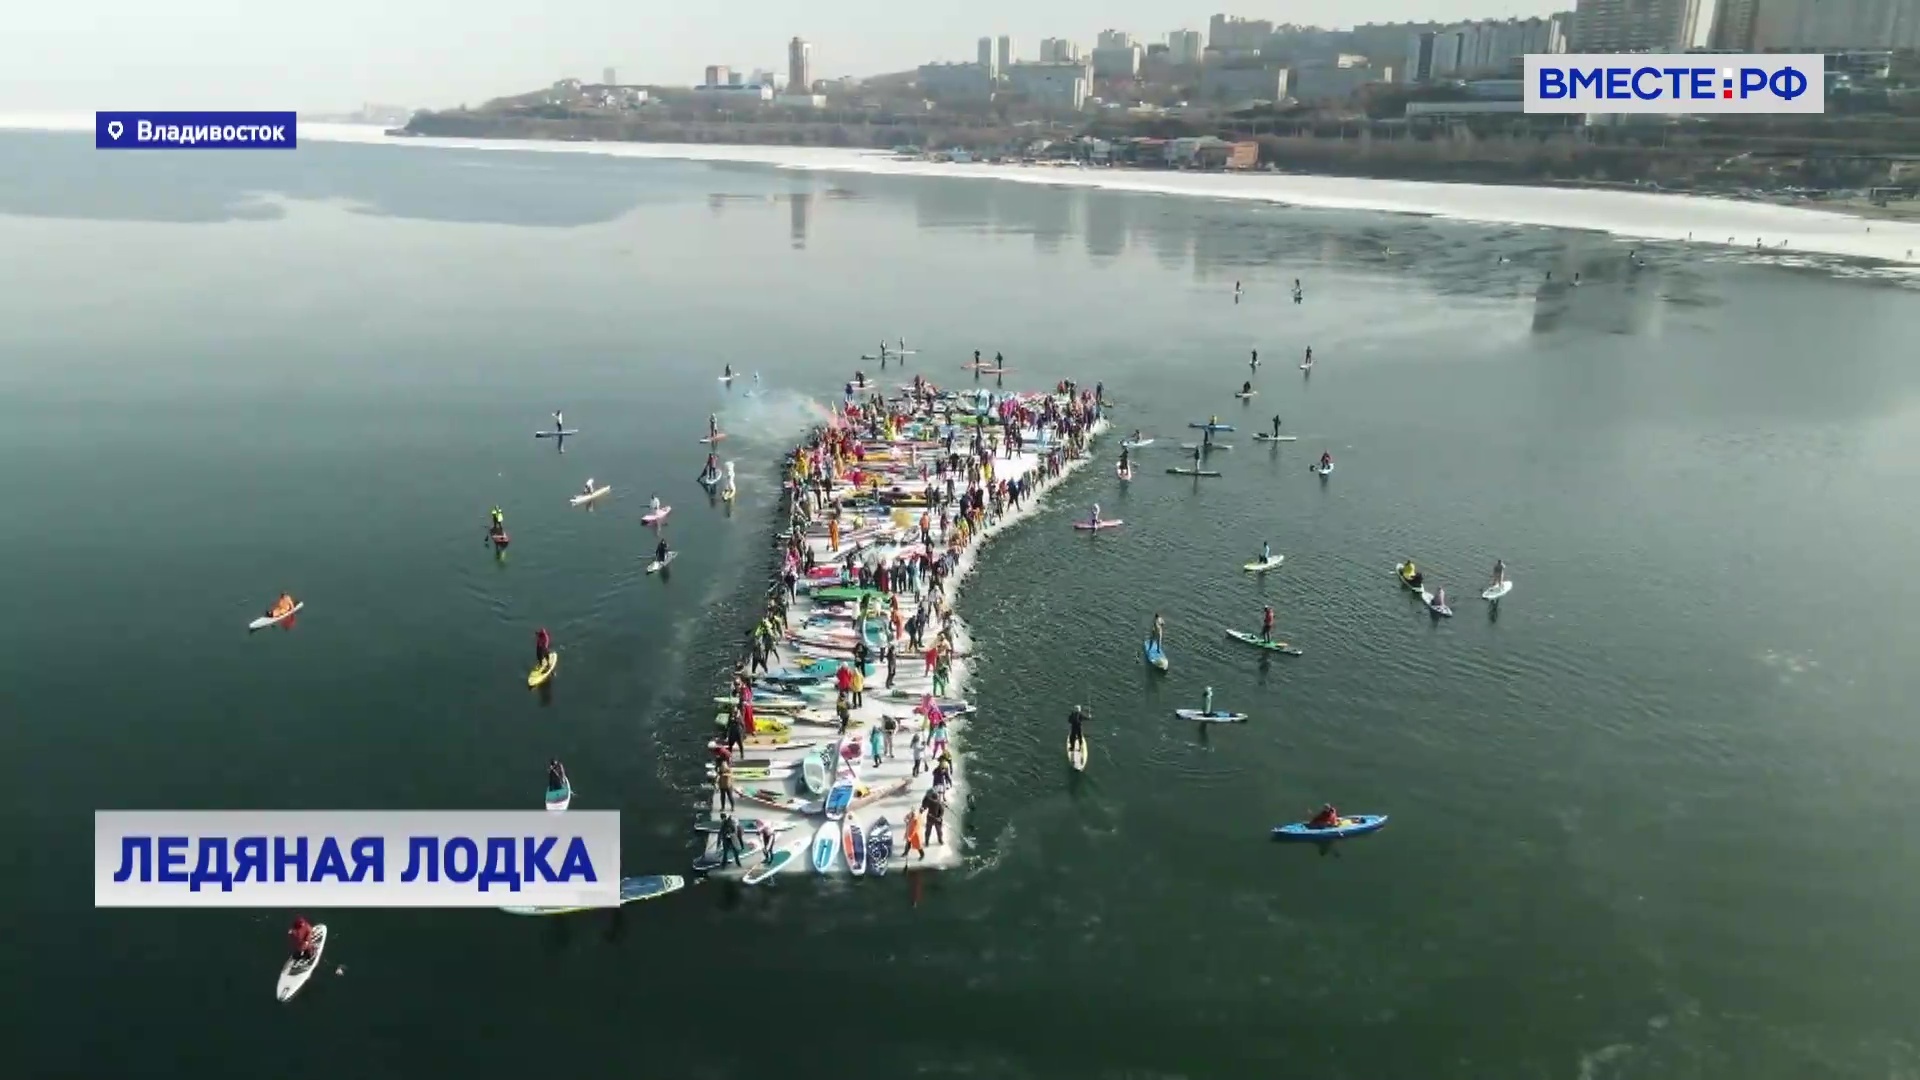 В Приморском крае спортсмены «угнали льдину» в честь открытия сезона